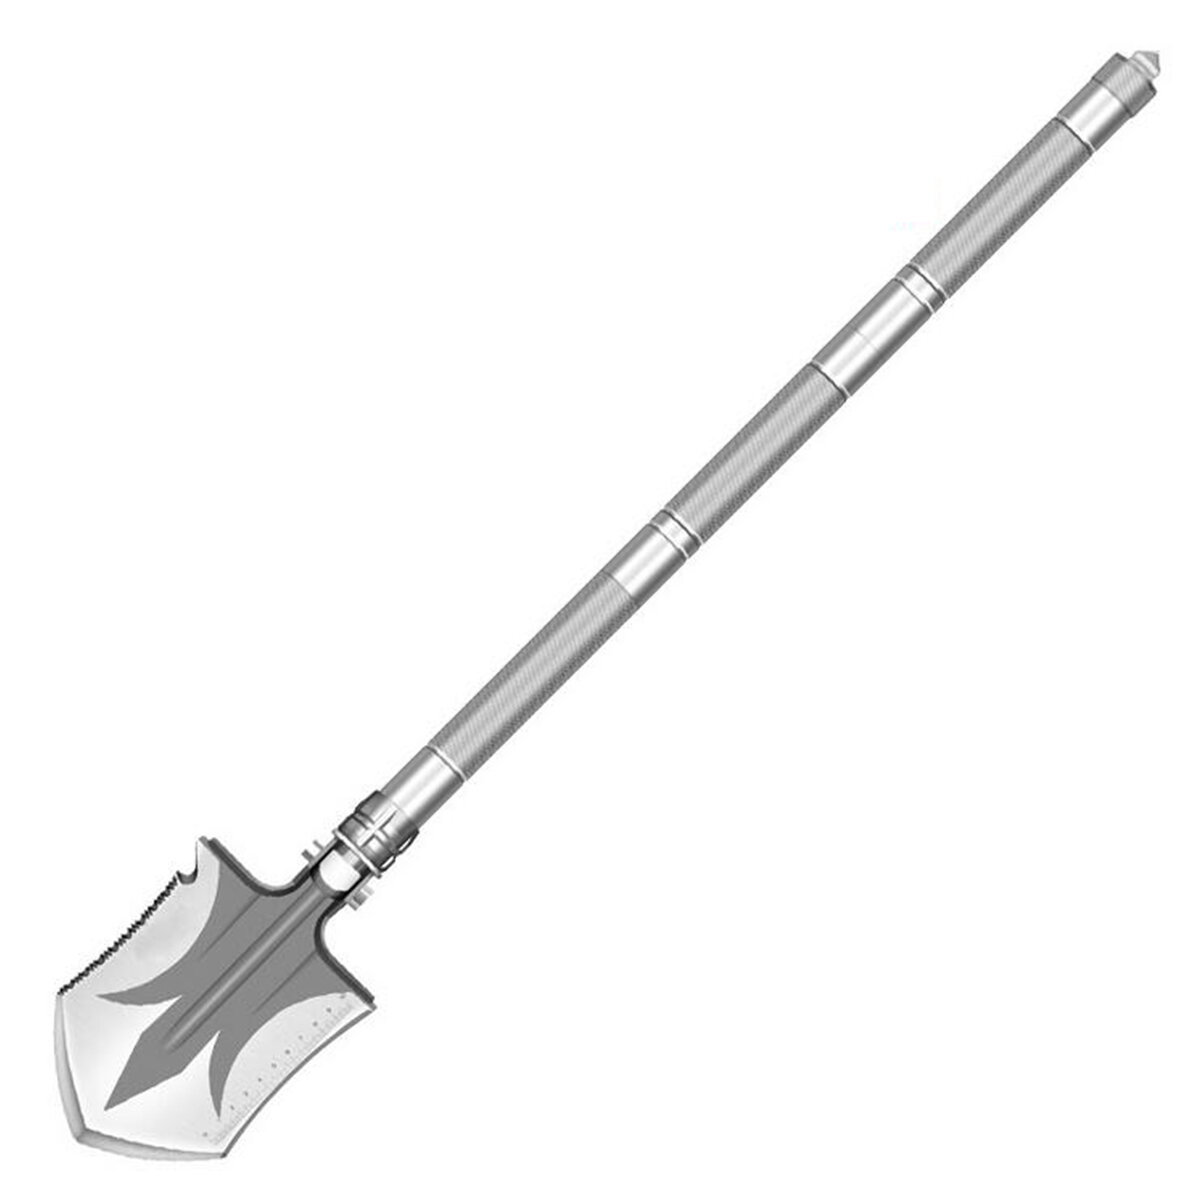 Разнофункциональная складная лопата из марганцевой стали и алюминиевого сплава с анти-скользящим покрытием, удобный инструмент для кемпинга.